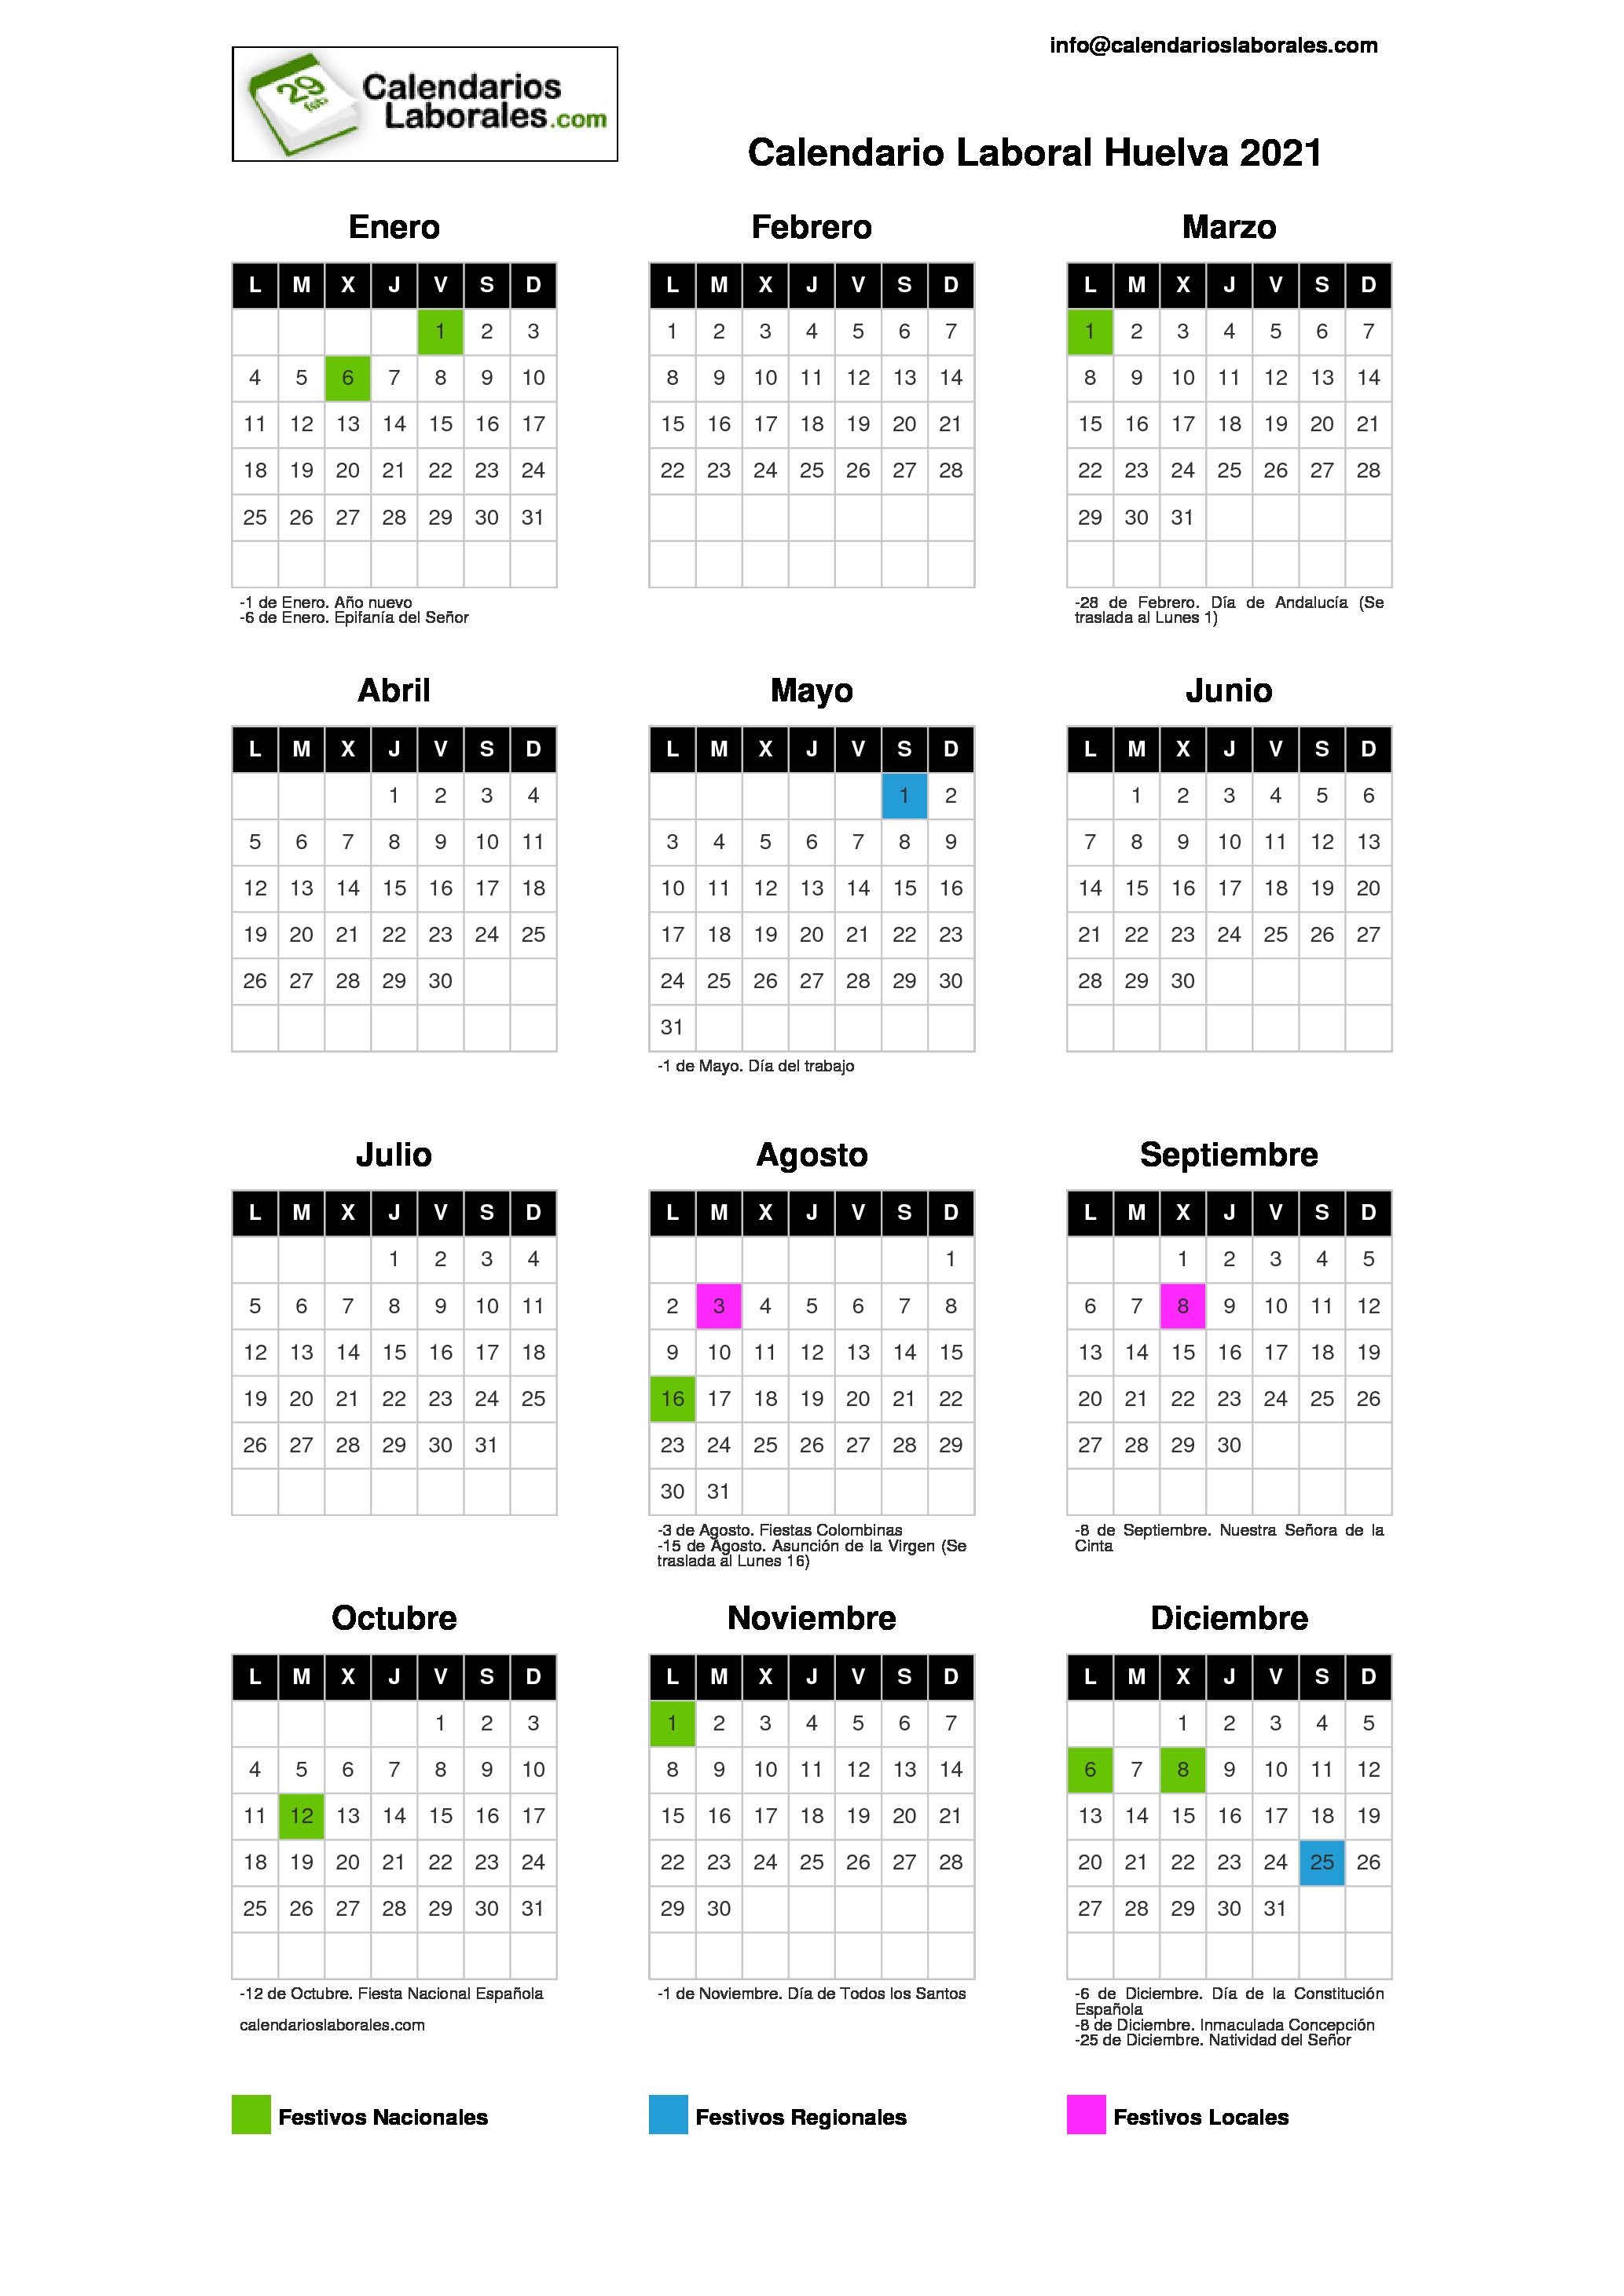 Calendario Laboral Huelva 2021